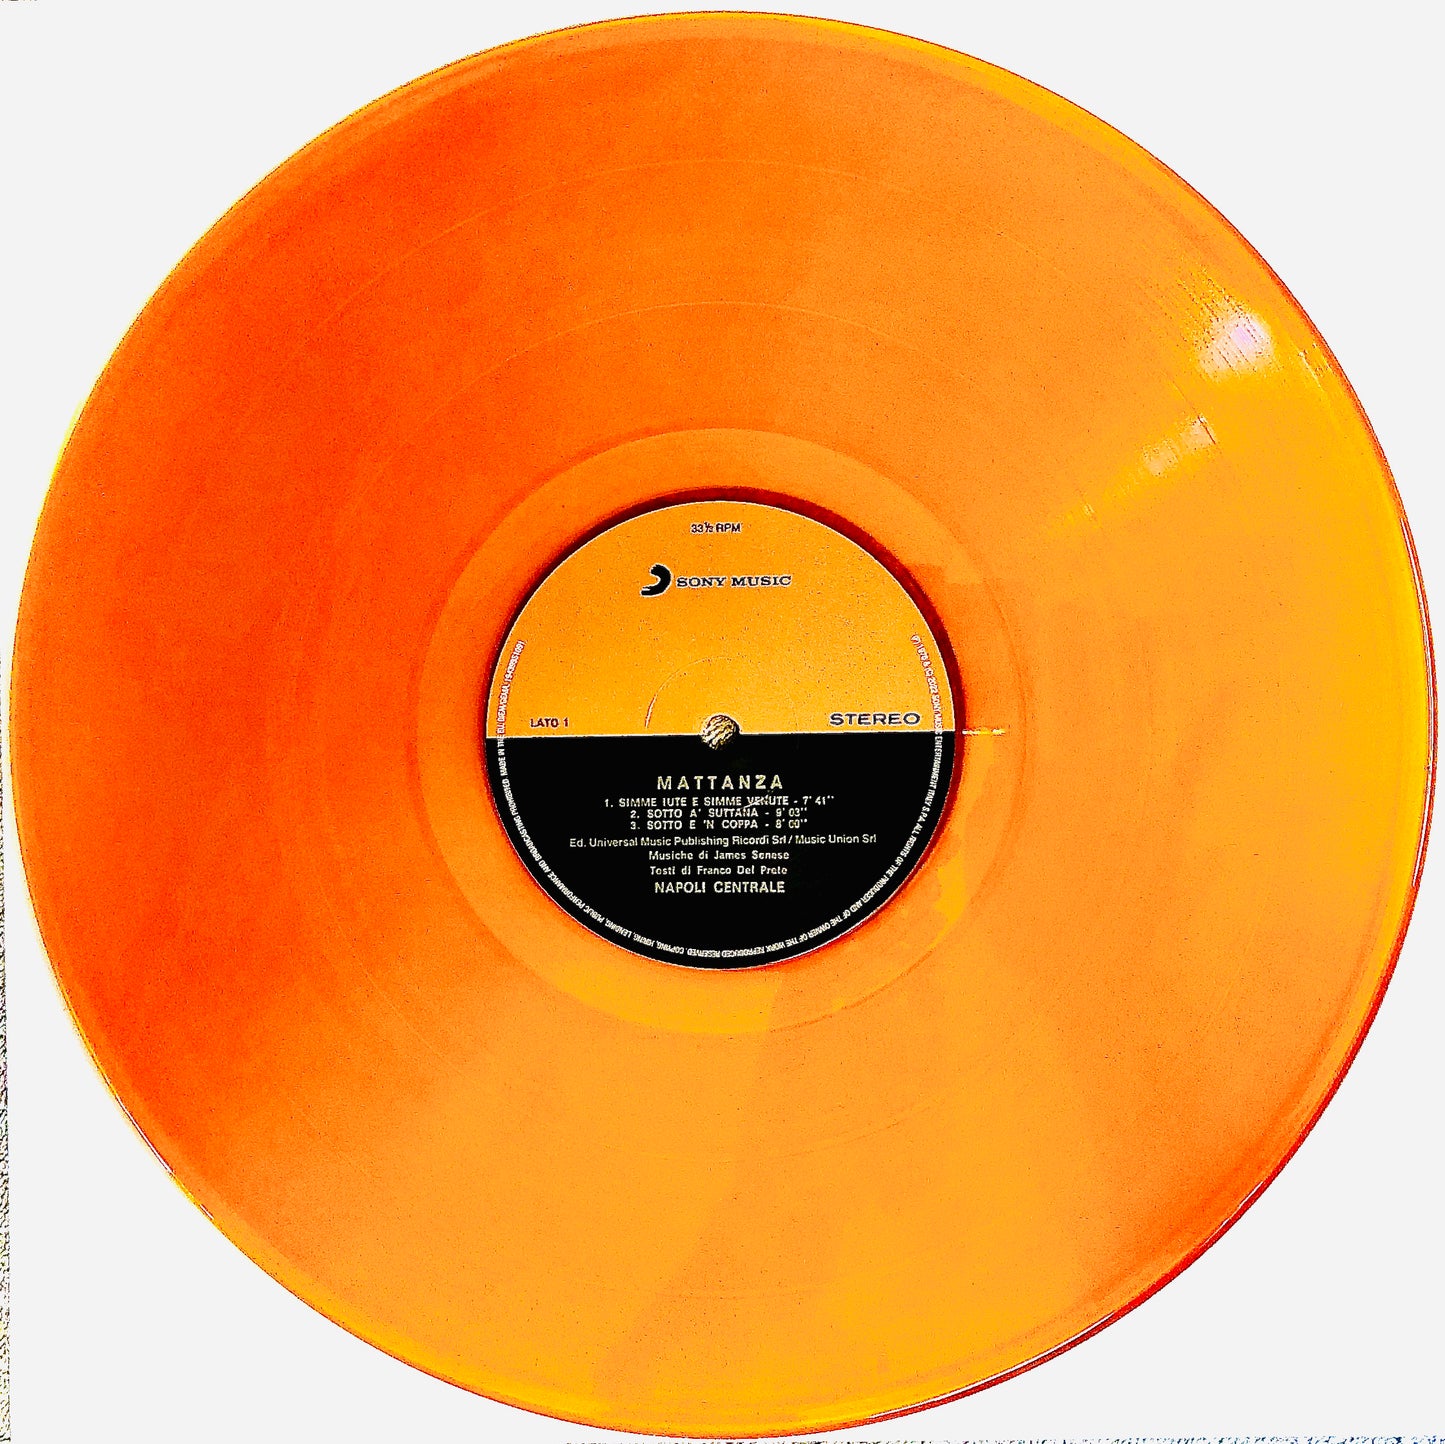 NAPOLI CENTRALE - Mattanza - Vinile Arancione Trasparente (Clear Orange  Vinyl)